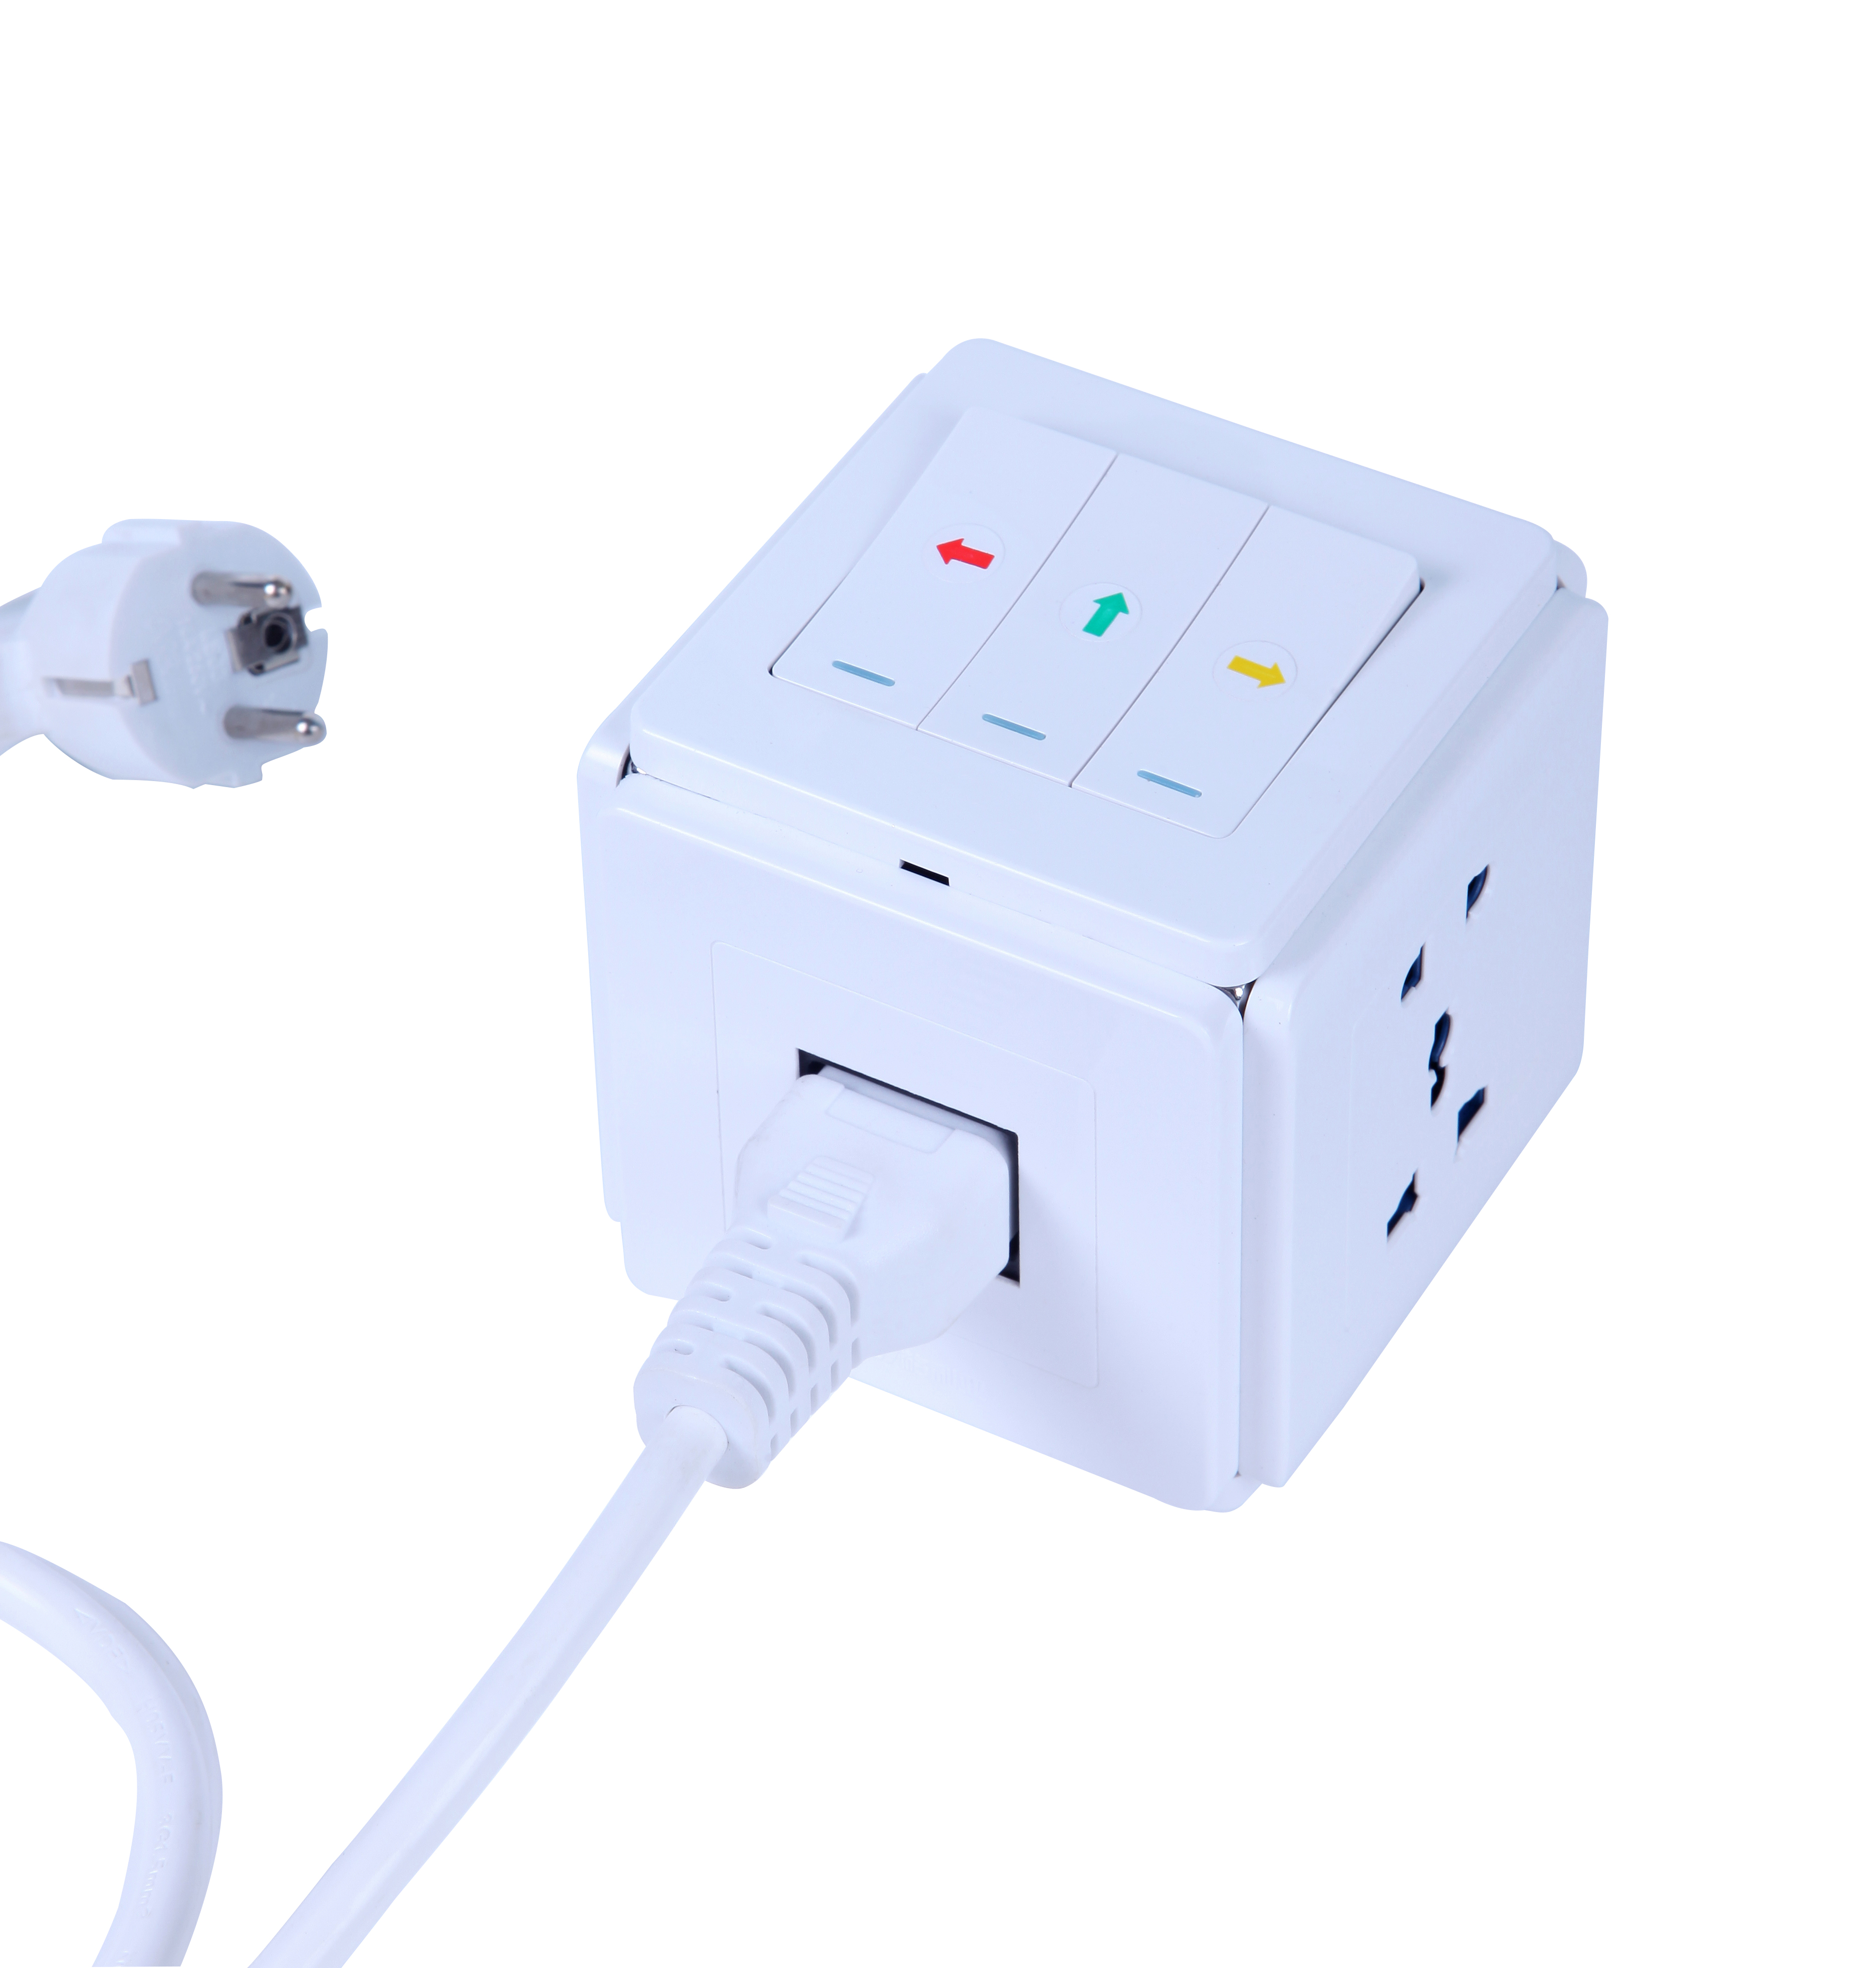 Nieuwe multifunctionele adapter SMART Power Plug Cube Cocket voor kantoor energiebesparing met gemeenschappelijk 1,5 m netsnoer